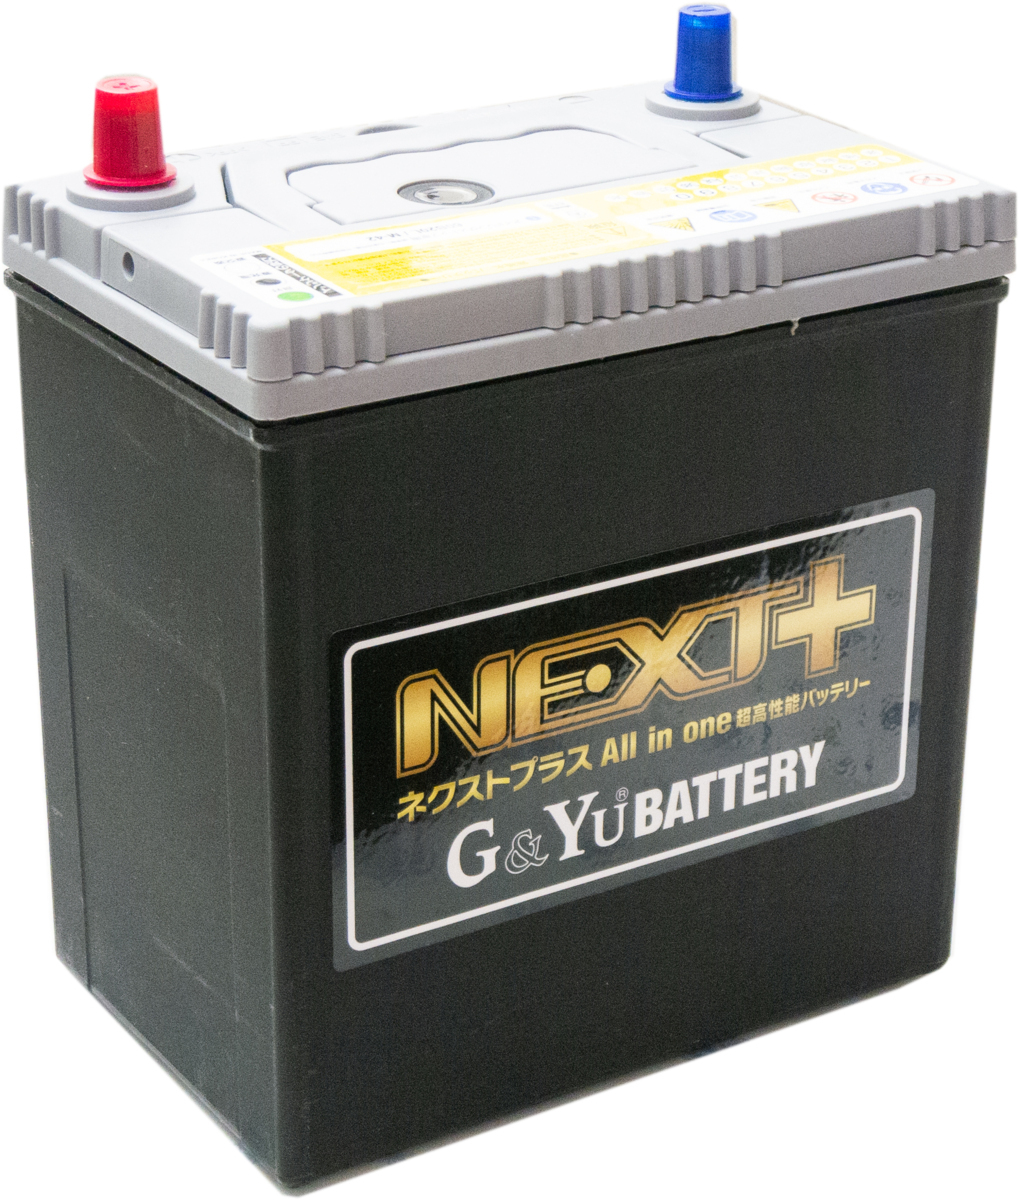 新品 G&Yu バッテリー 高性能 NEXT+ アイドリング車 充電制御車 Q-85R 95D23R 個人宅配送不可_画像2